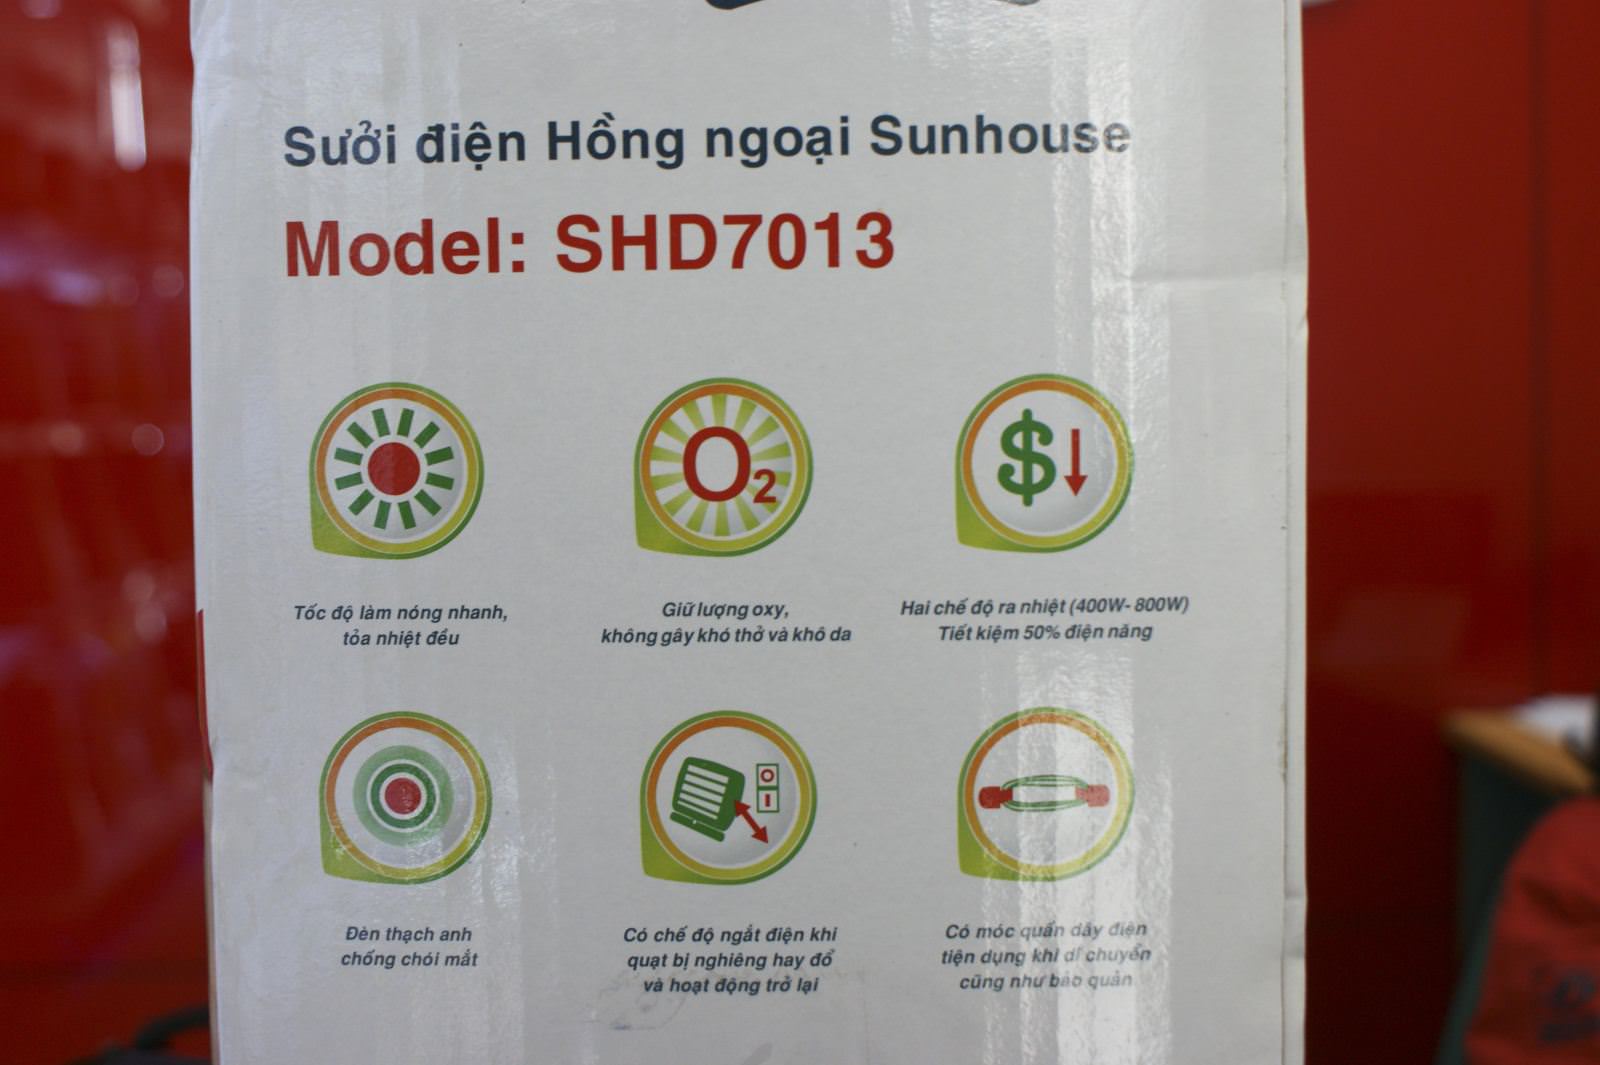 Máy sưởi điện Hồng ngoại Sunhouse – Sản phẩm tốt cho sức khỏe vào mùa Đông 2